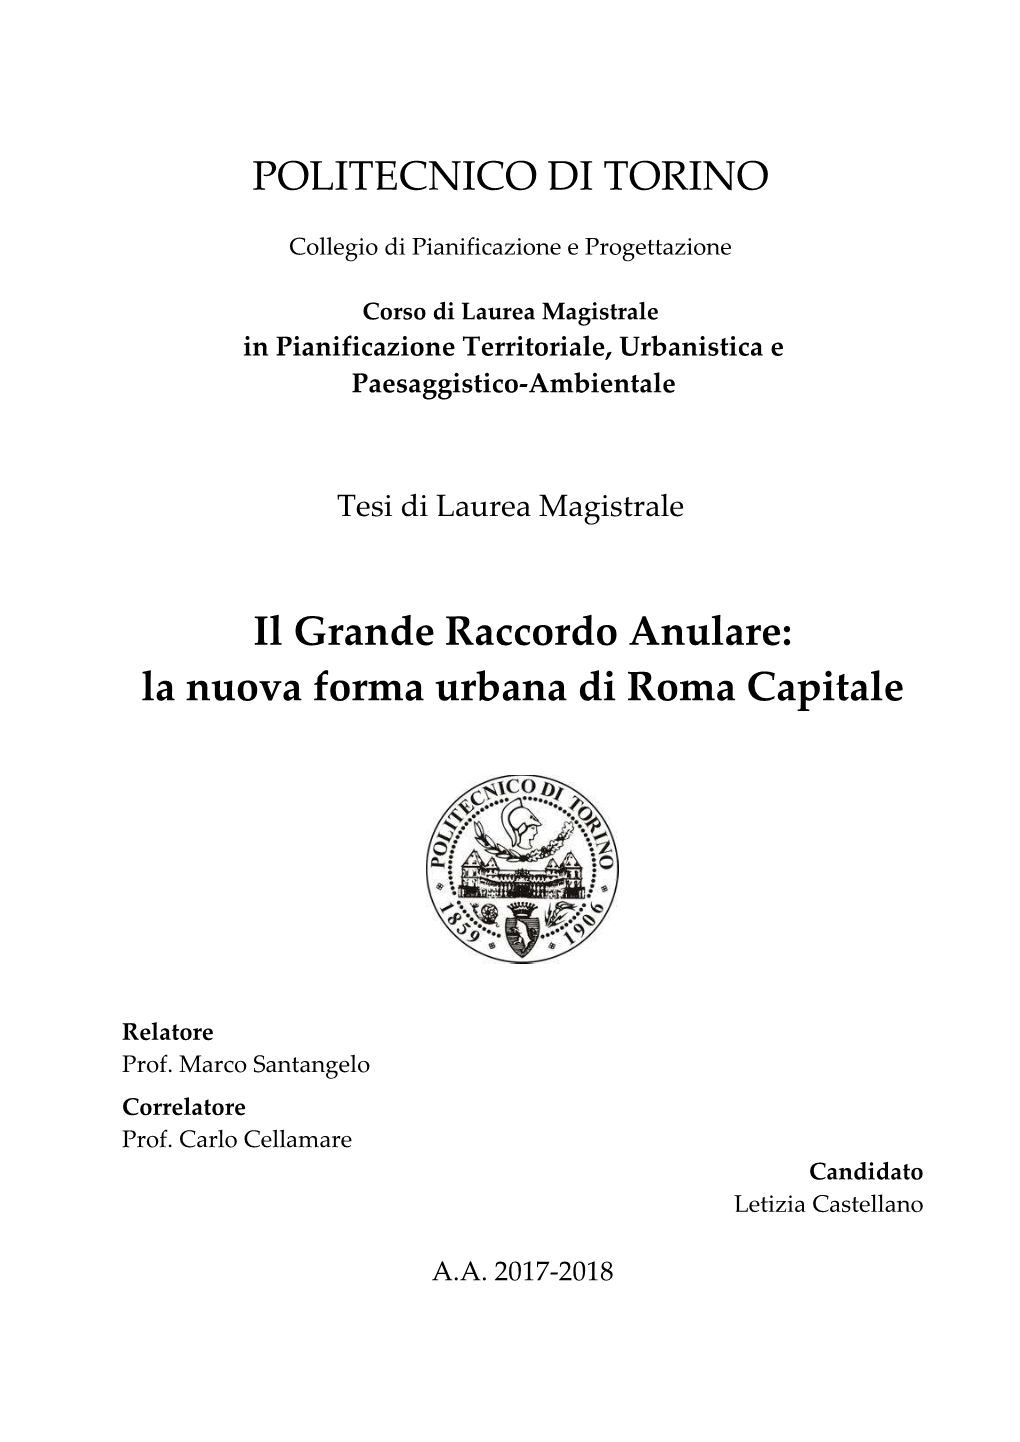 Il Grande Raccordo Anulare: La Nuova Forma Urbana Di Roma Capitale